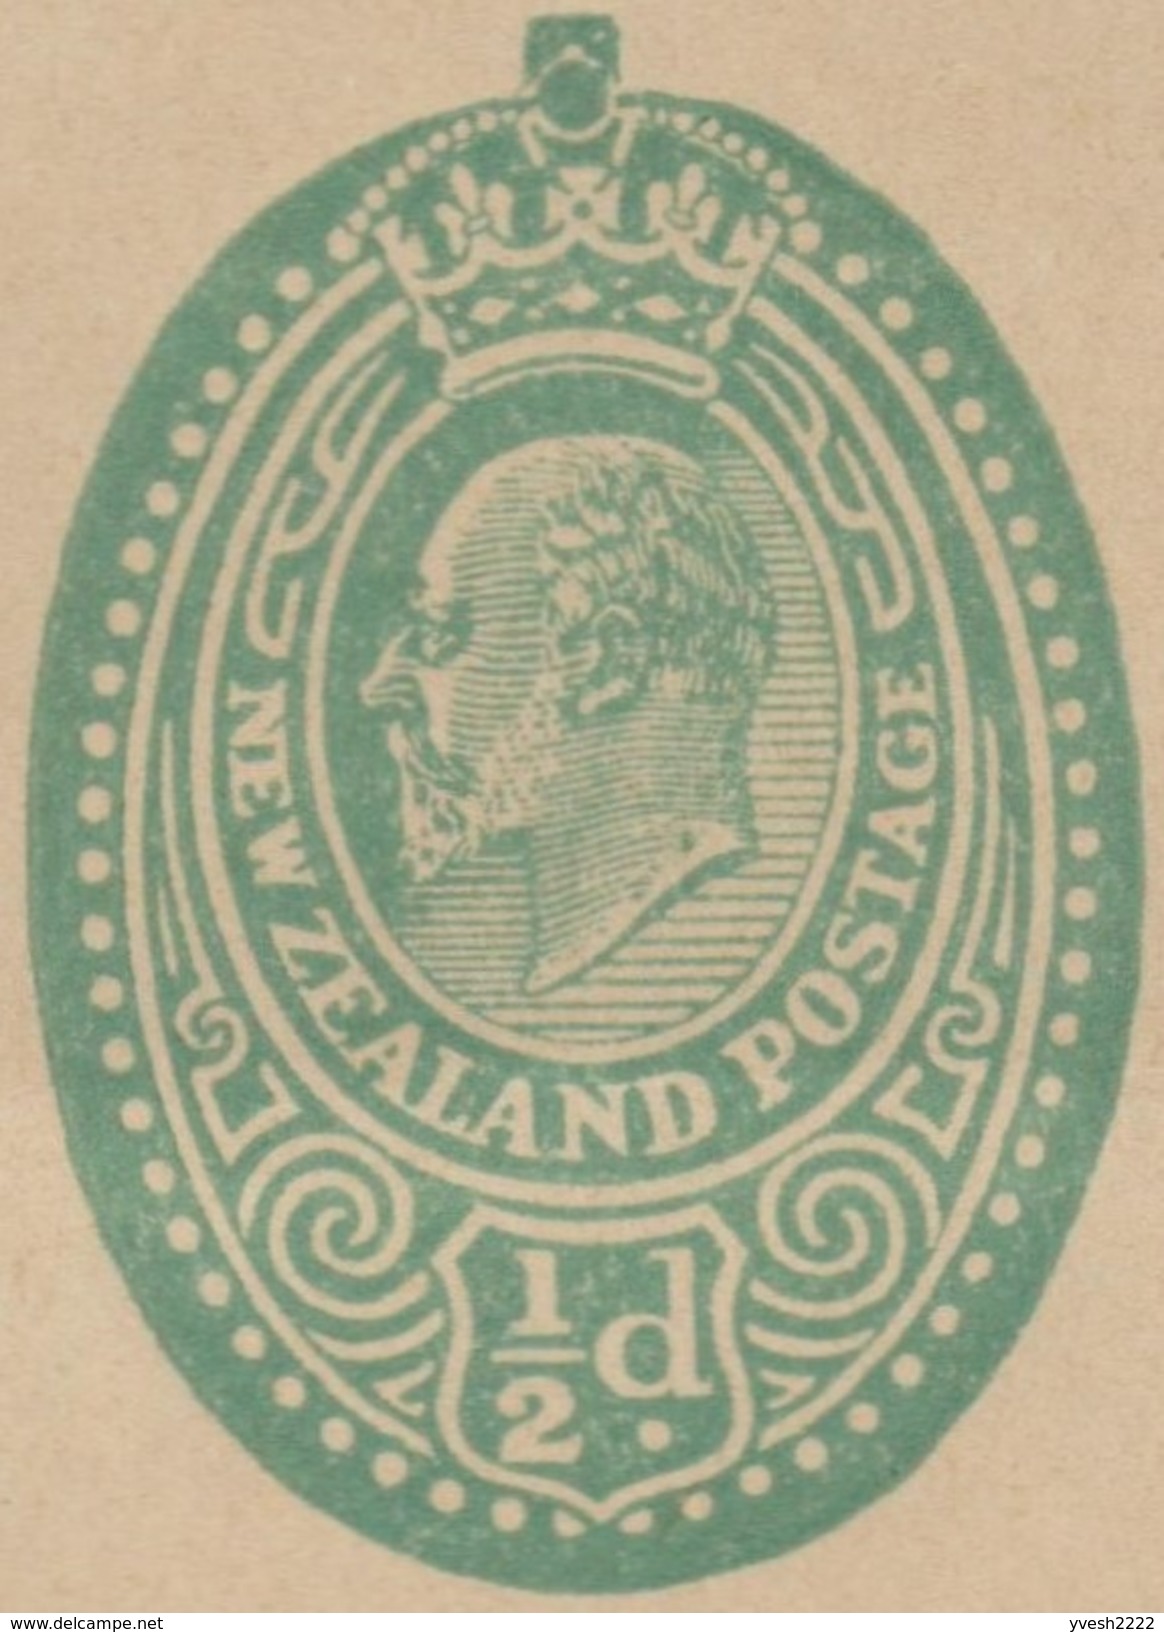 Nouvelle-Zélande Vers 1908. Entier Postal, Bande-journal Édouard VII » (Edward VII). Fraîcheur Exceptionnelle - Entiers Postaux